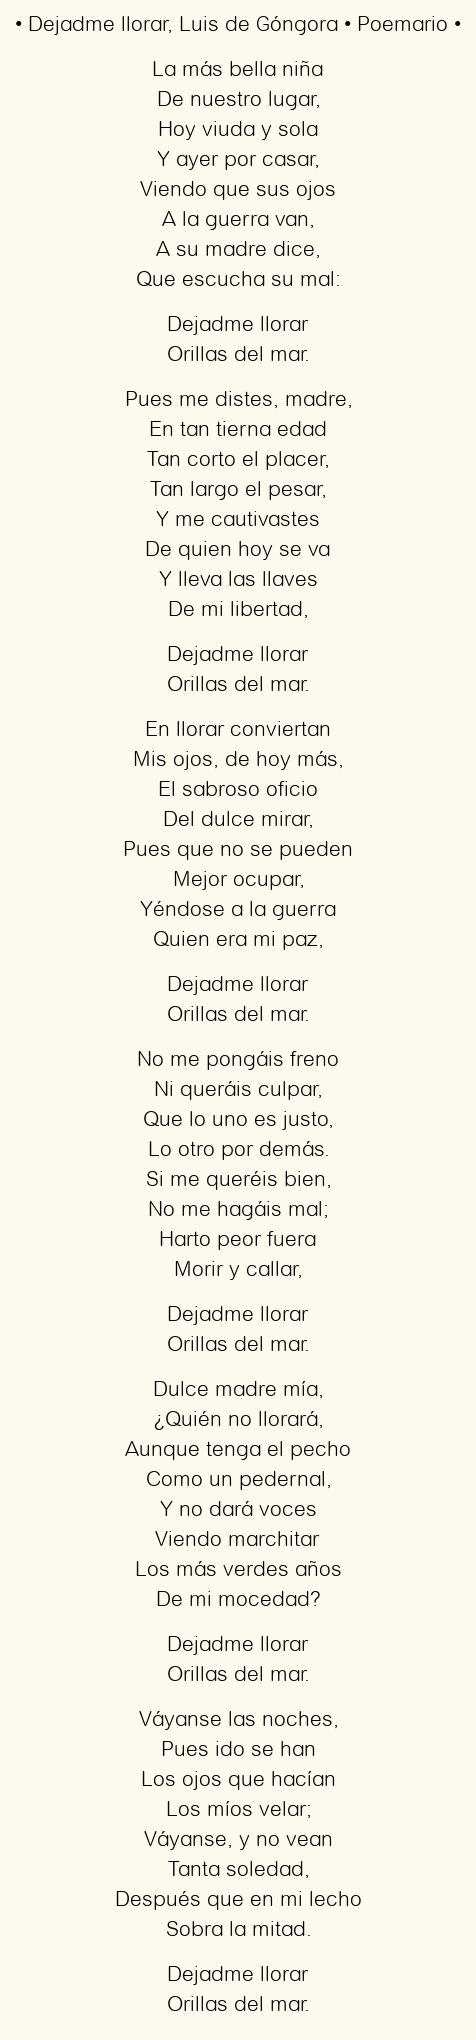 Imagen con el poema Dejadme llorar, por Luis de Góngora